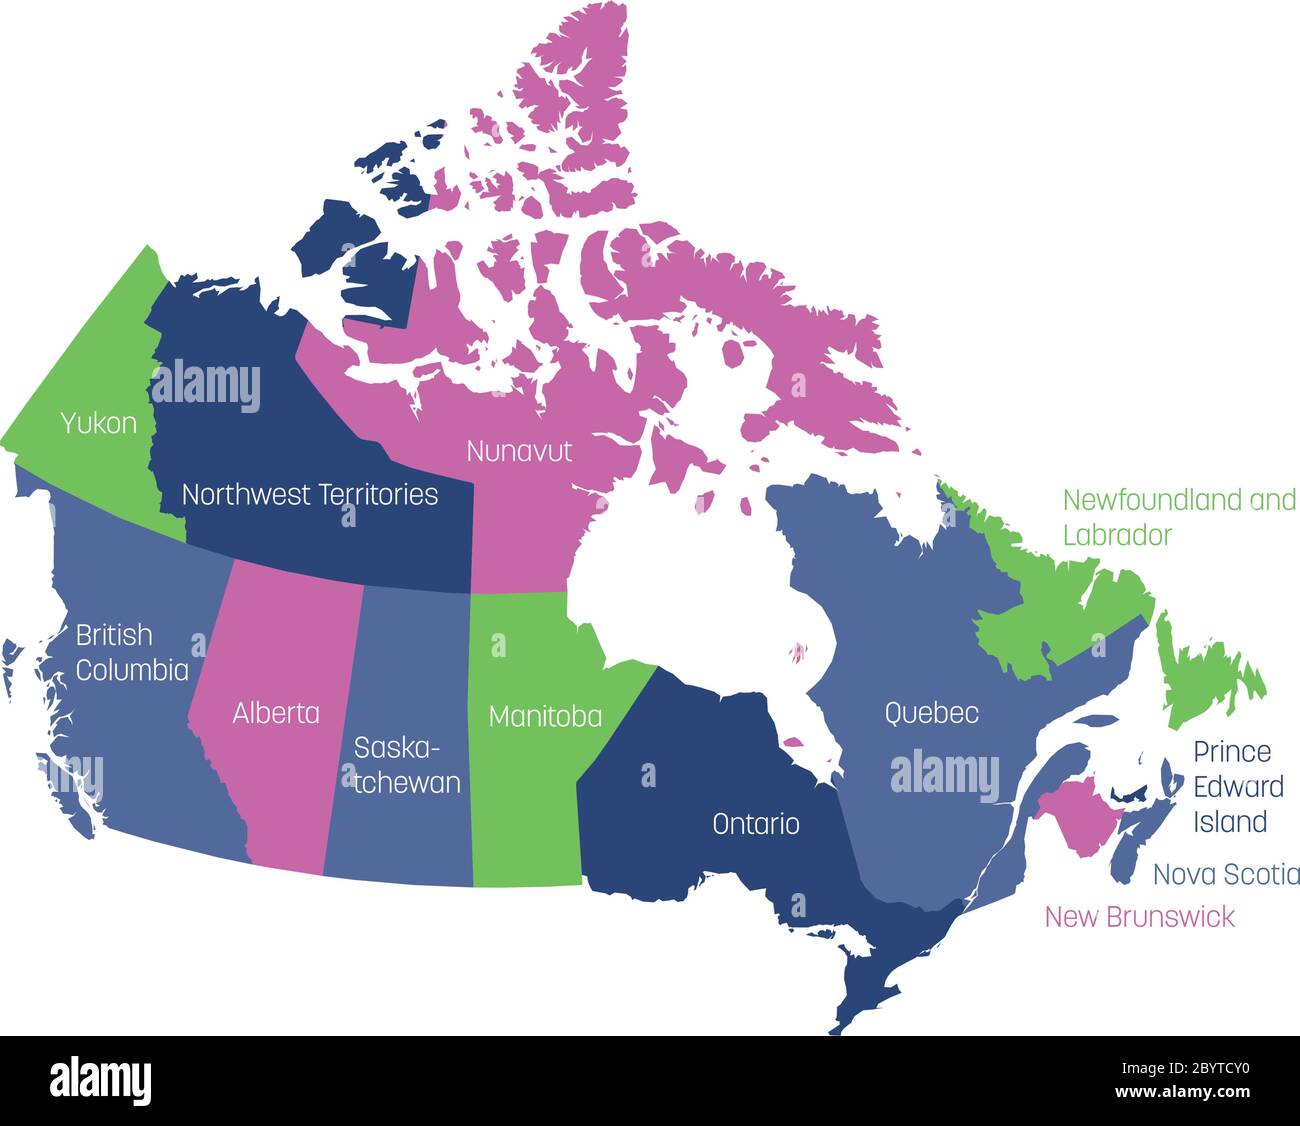 Mappa del Canada divisa in 10 province e 3 territori. Regioni amministrative del Canada. Mappa multicolore con etichette. Illustrazione vettoriale. Illustrazione Vettoriale